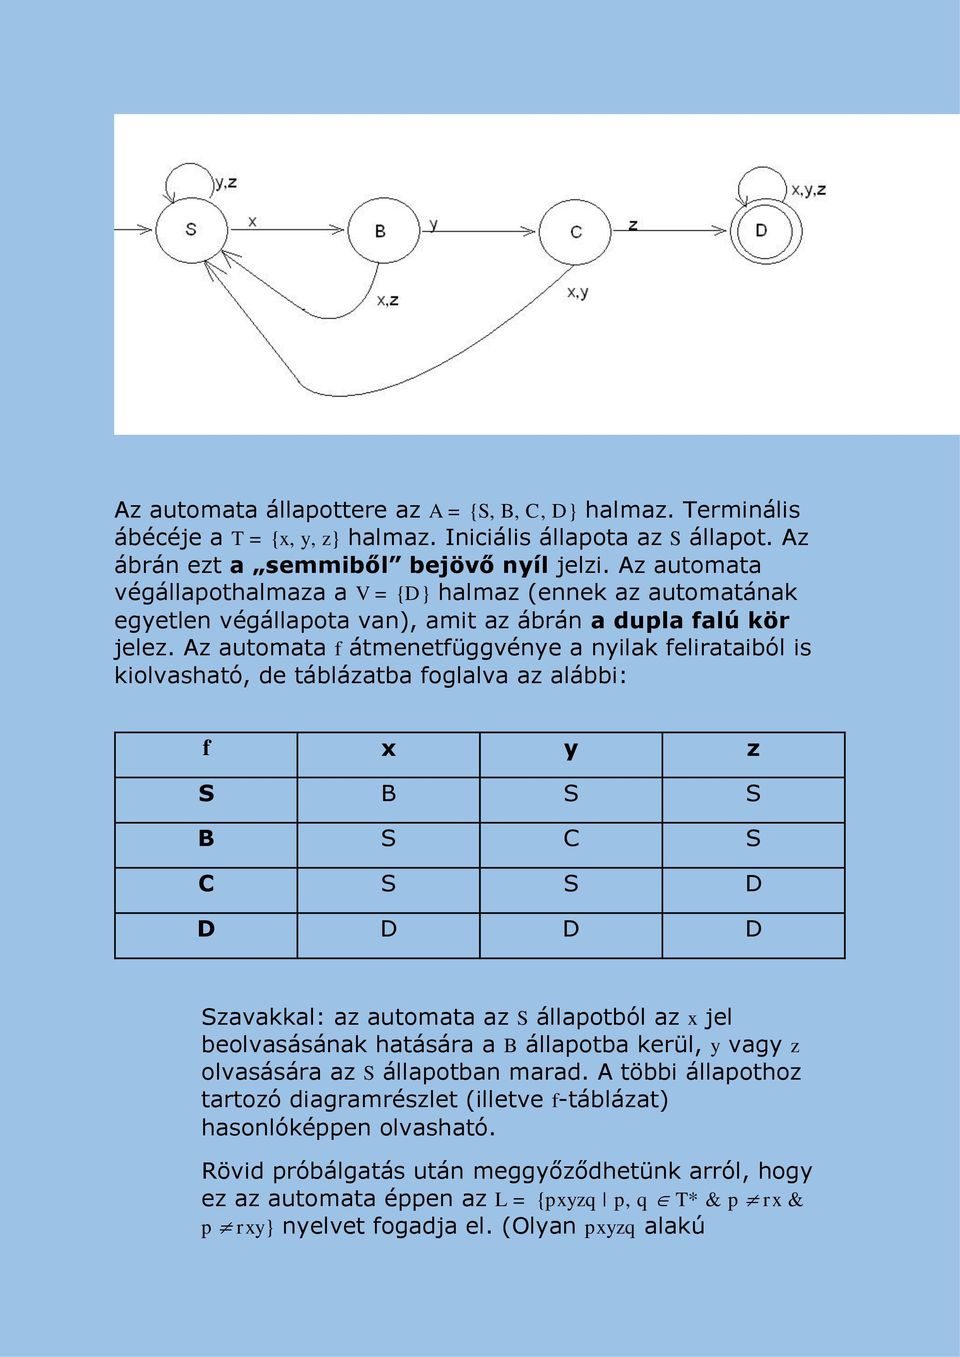 Az automata f átmenetfüggvénye a nyilak felirataiból is kiolvasható, de táblázatba foglalva az alábbi: f x y z S B S S B S C S C S S D D D D D Szavakkal: az automata az S állapotból az x jel